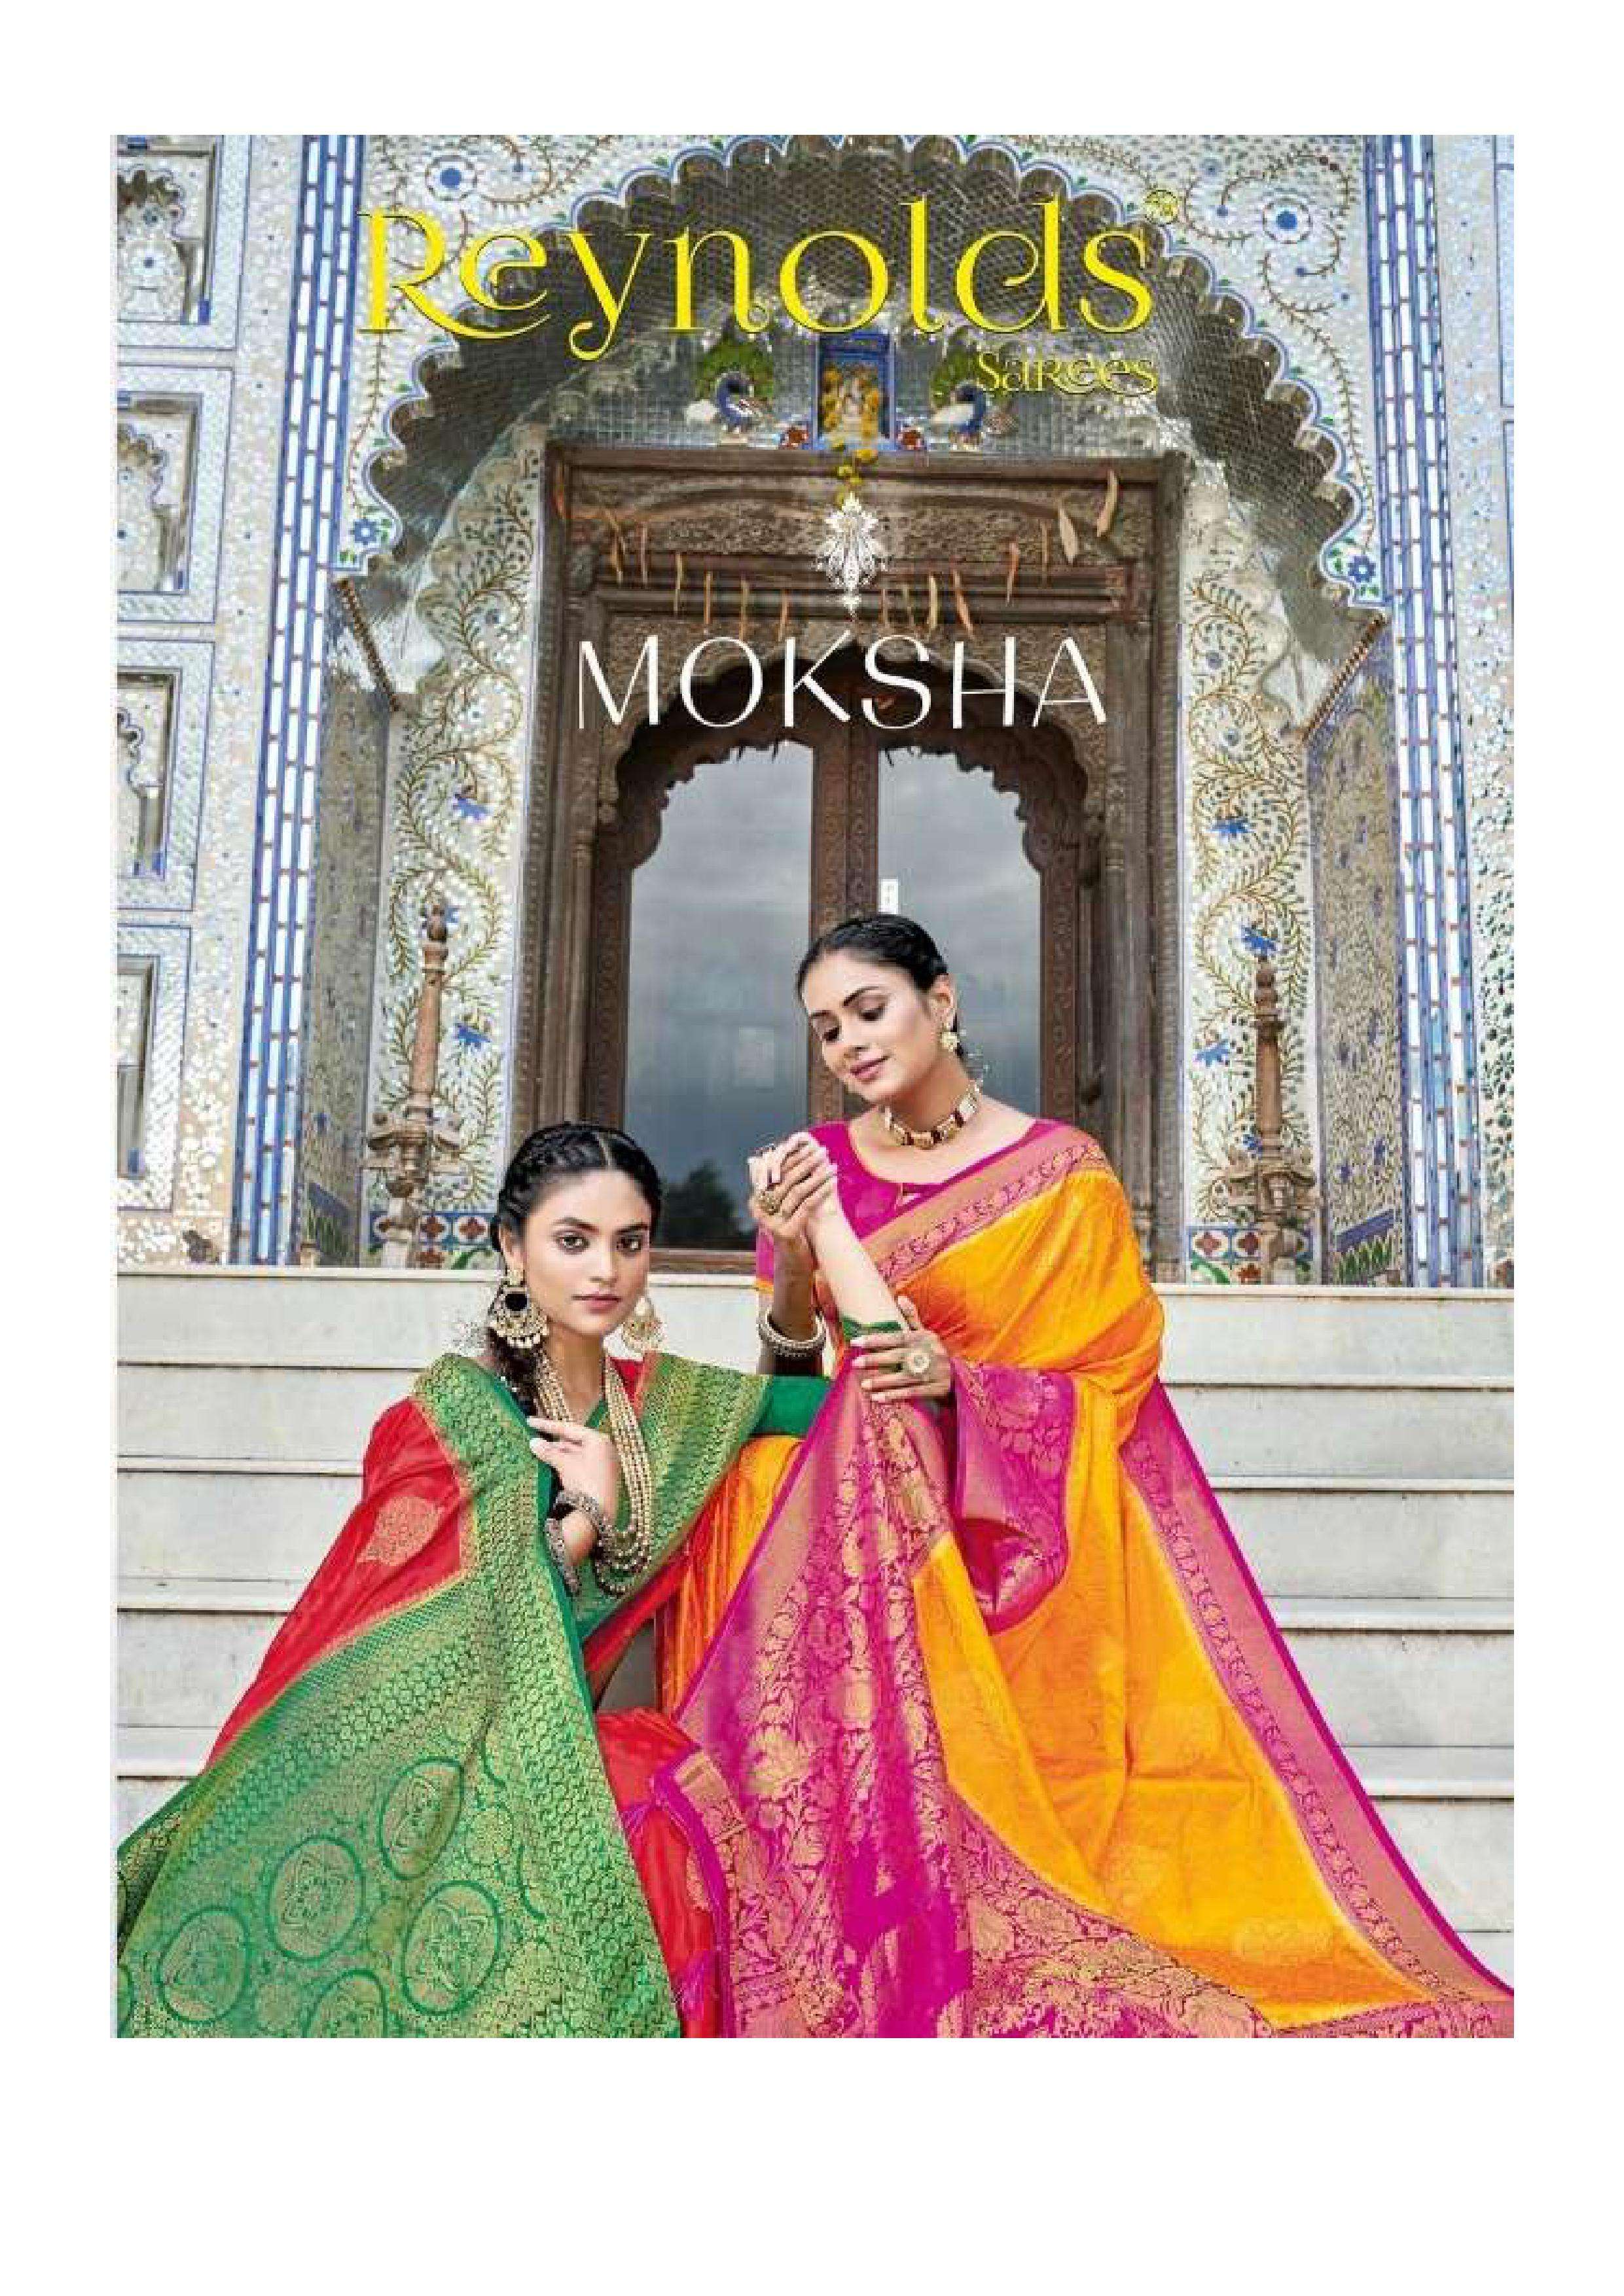 reynlods sarees moksha silk saree exclusive collection